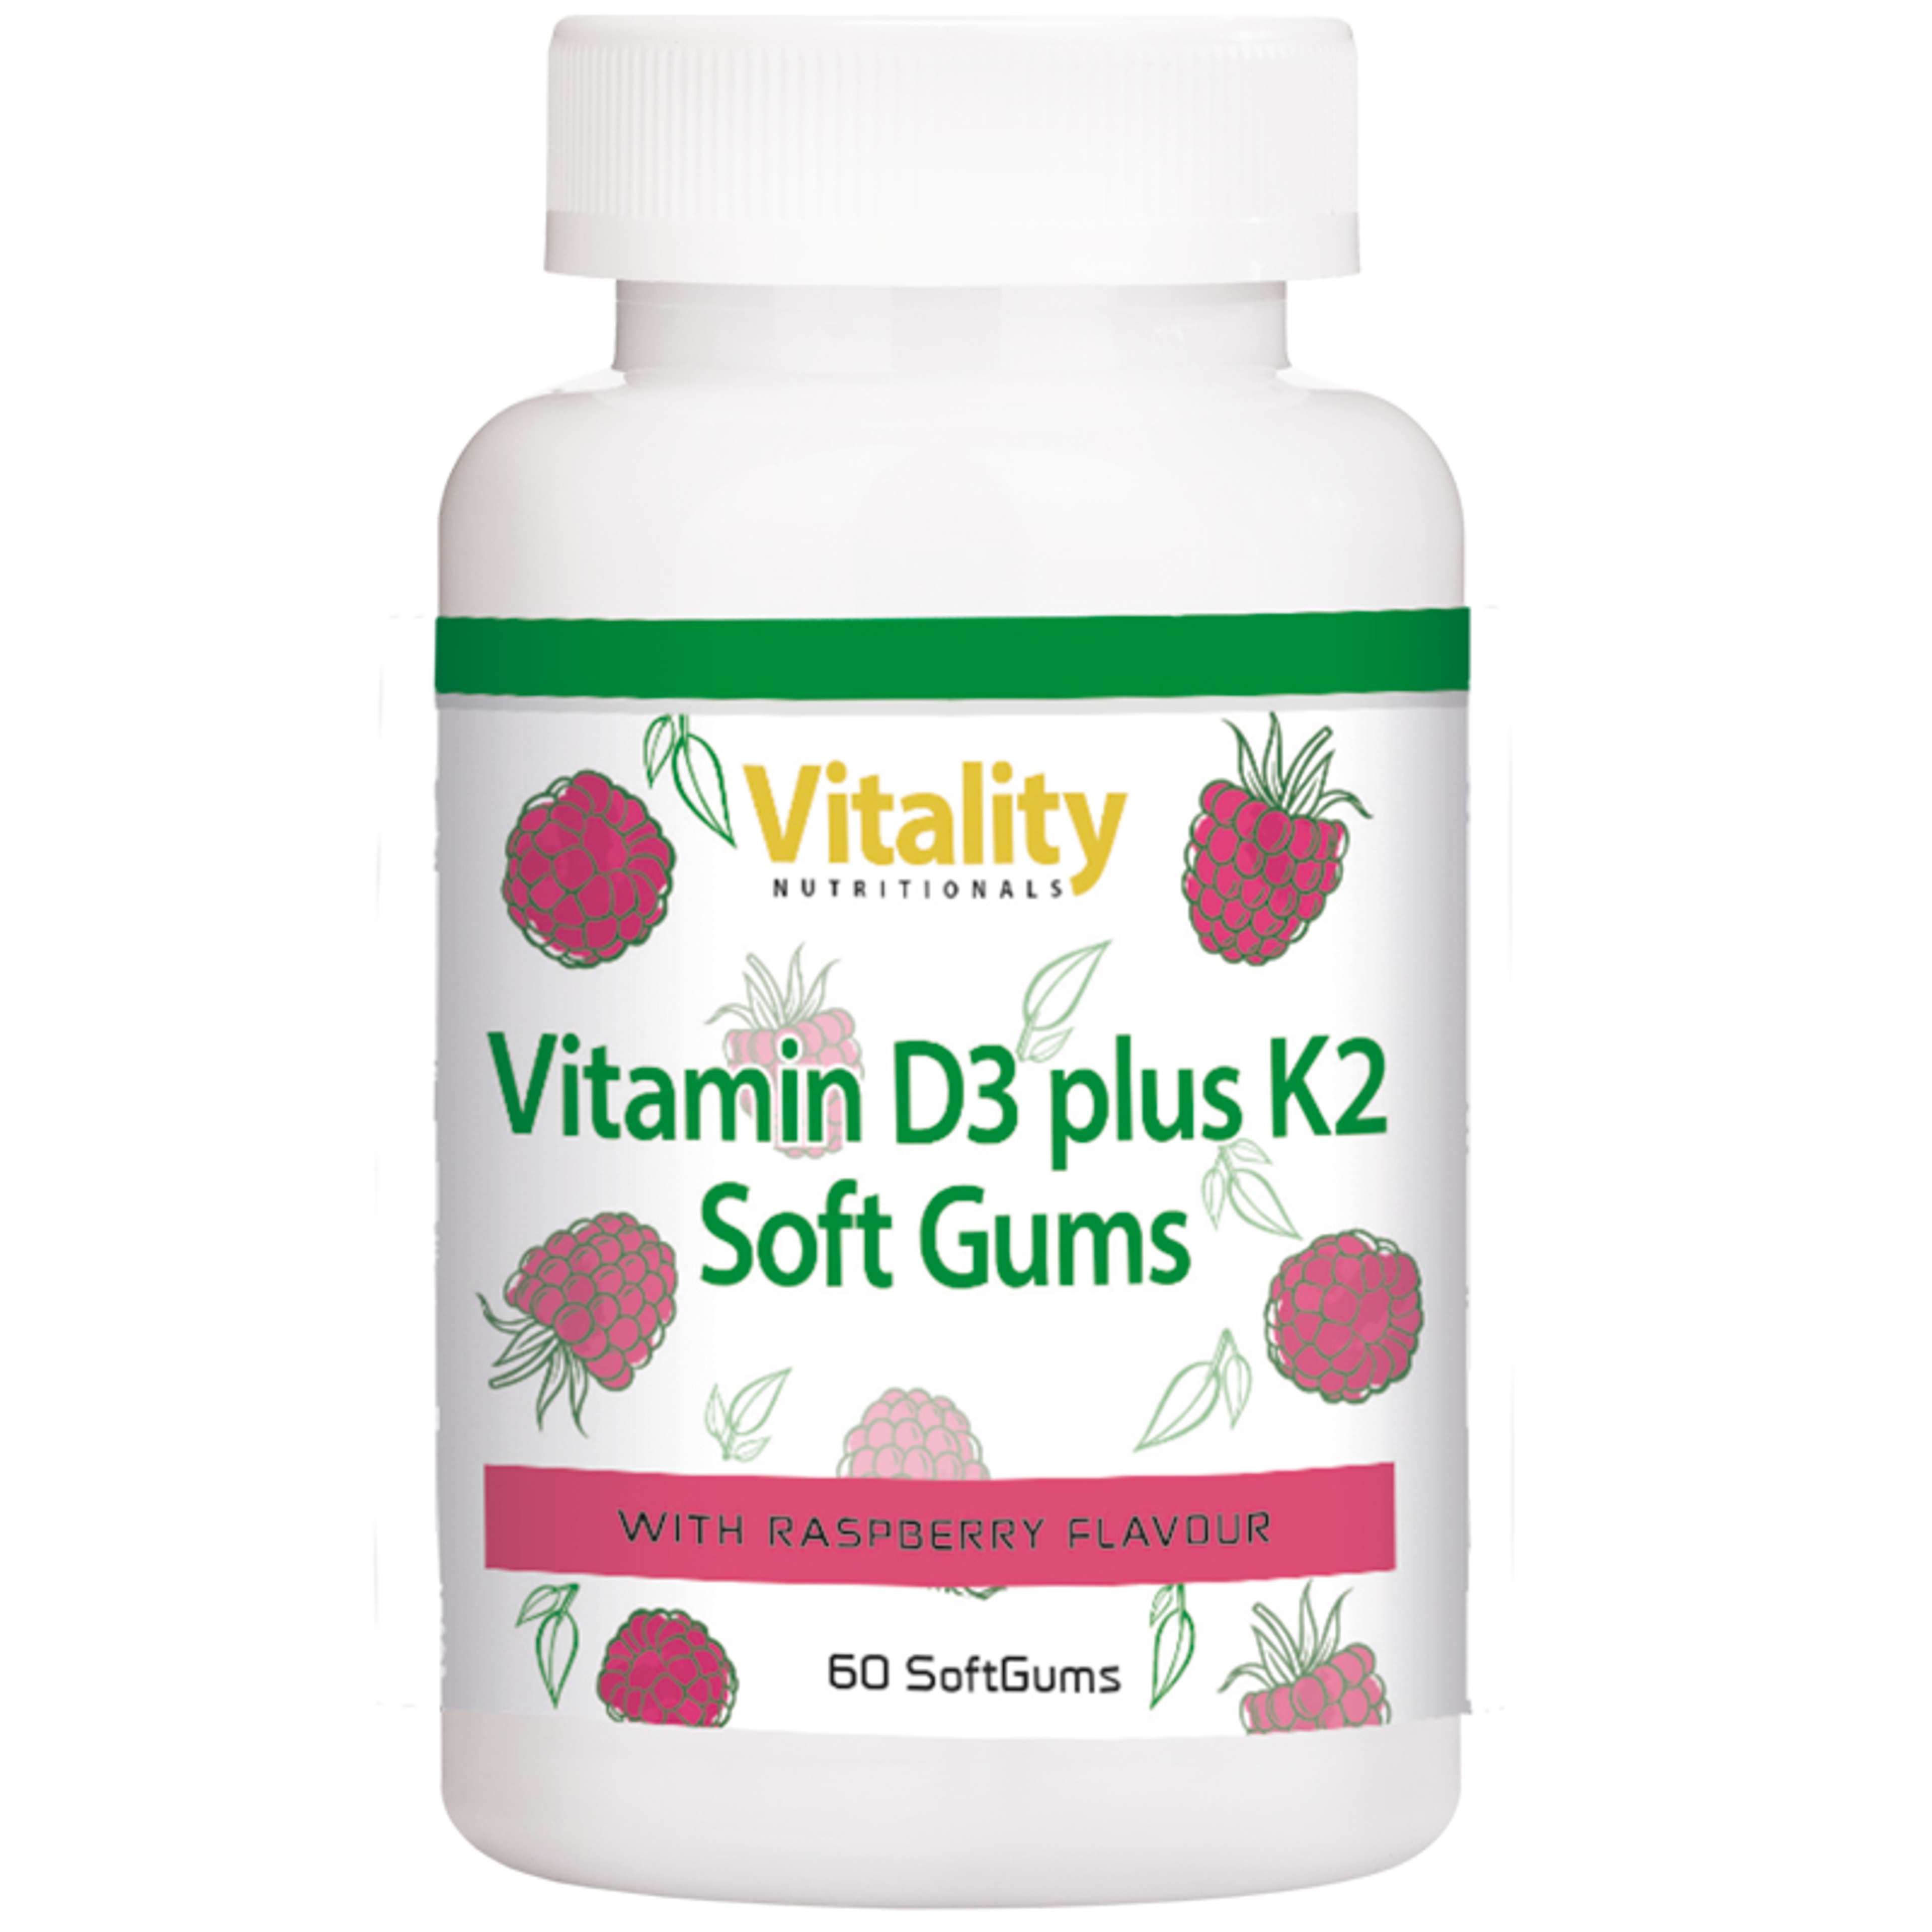 Vitamin D3 plus K2 Gummies - 60 